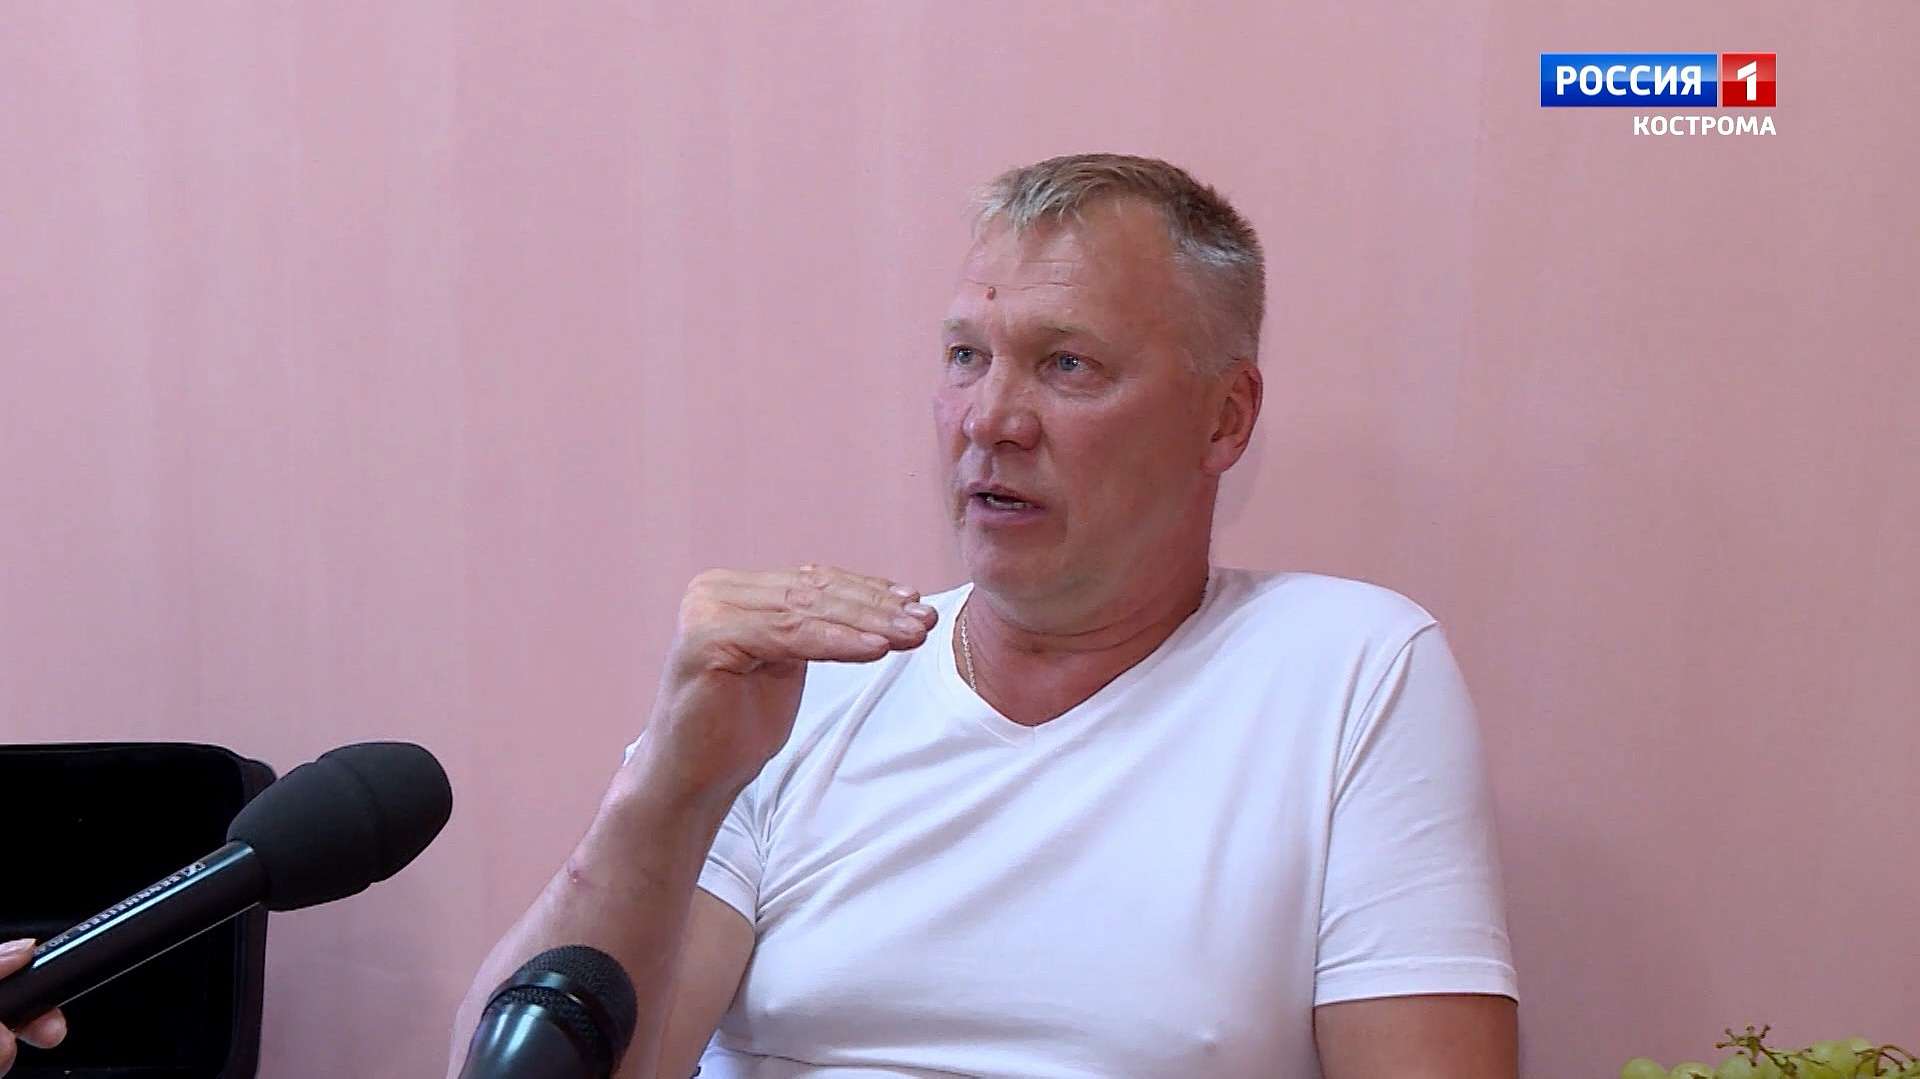 Актер Анатолий Журавлев признался костромичам: на пути к профессии посещал кружок кройки и шитья